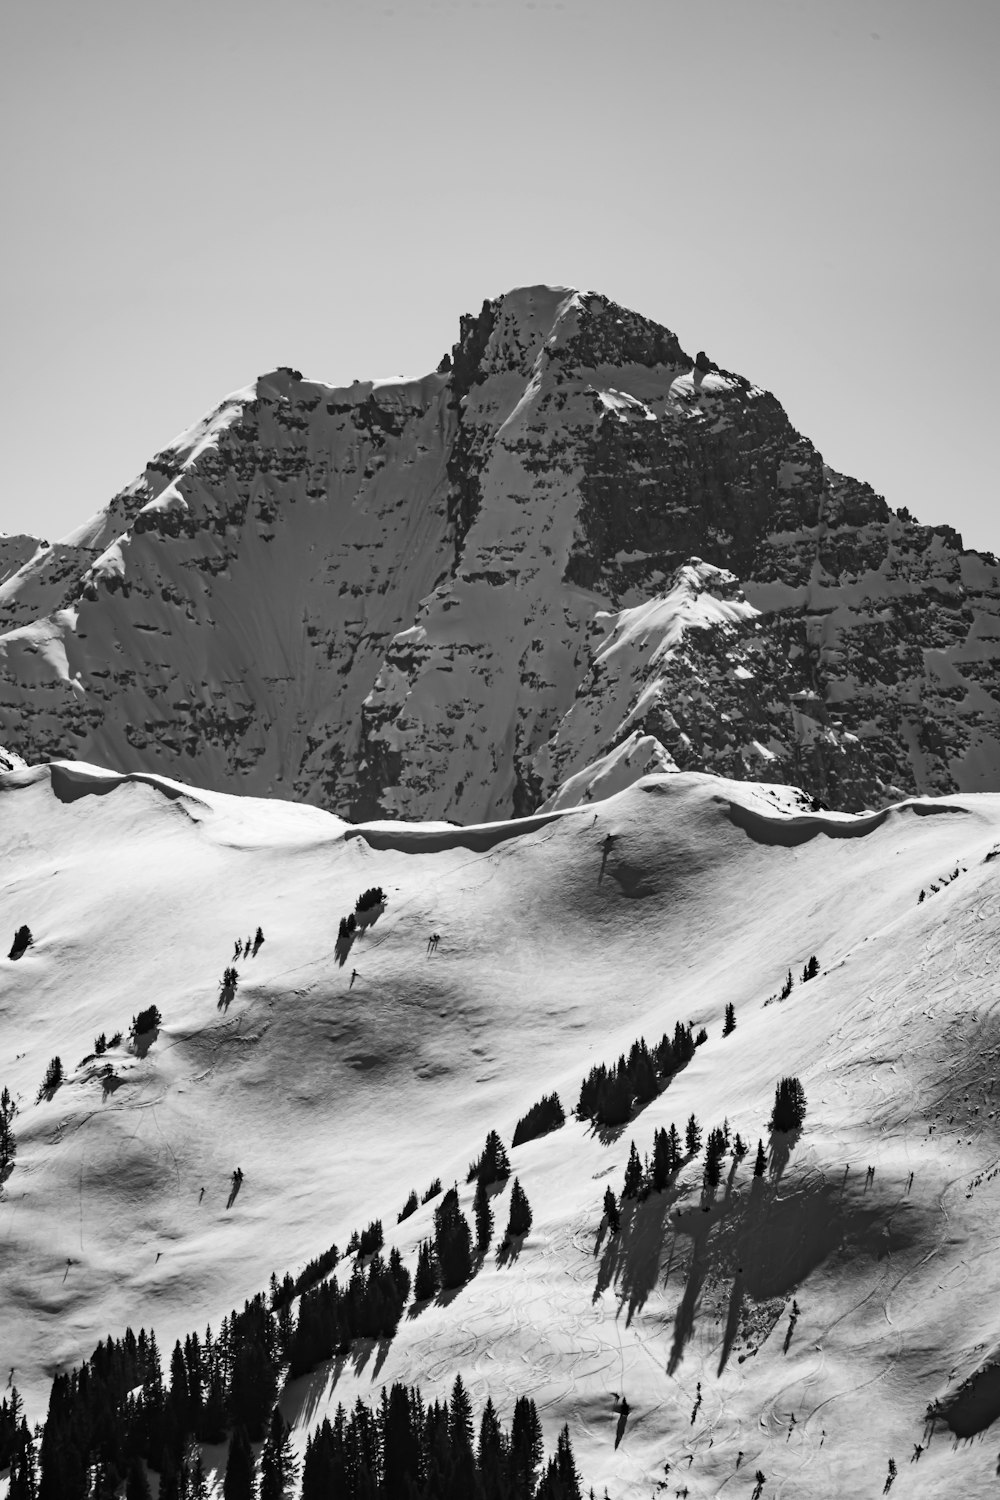 Photo en niveaux de gris de personnes faisant de la randonnée sur une montagne enneigée